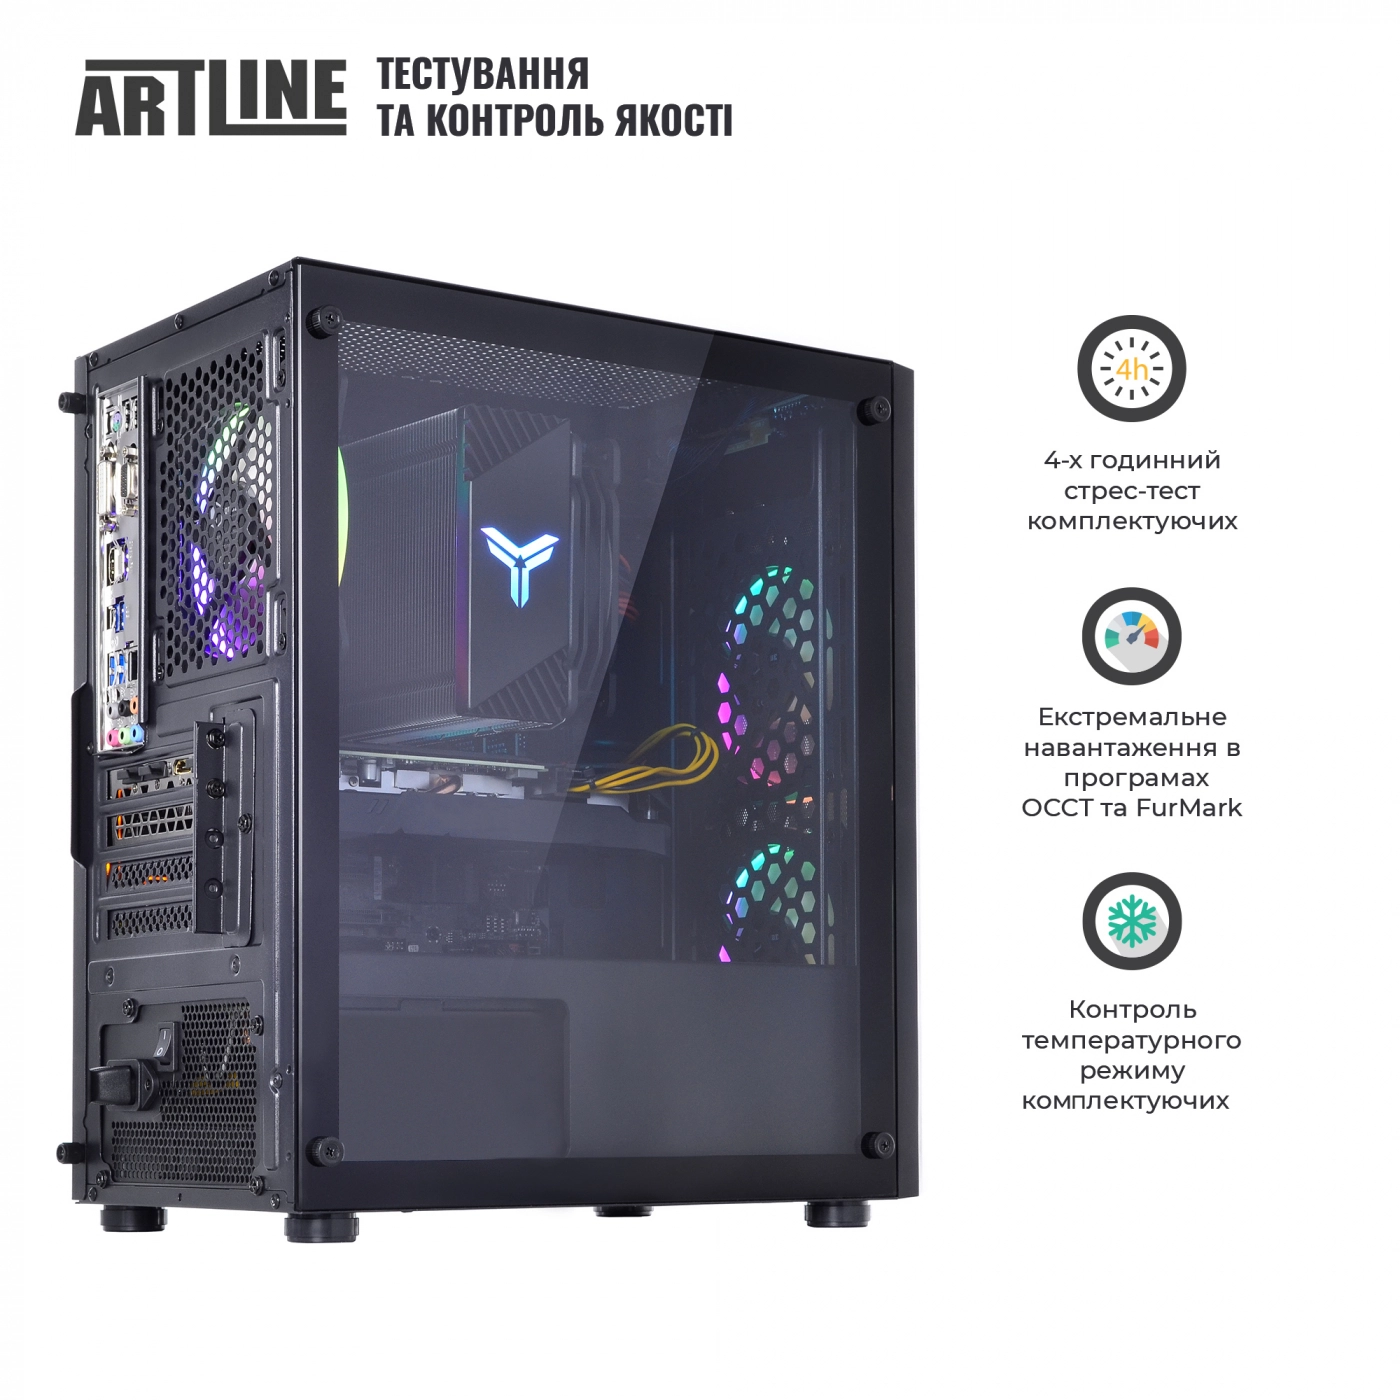 Купить Компьютер ARTLINE Gaming X71v33 - фото 9